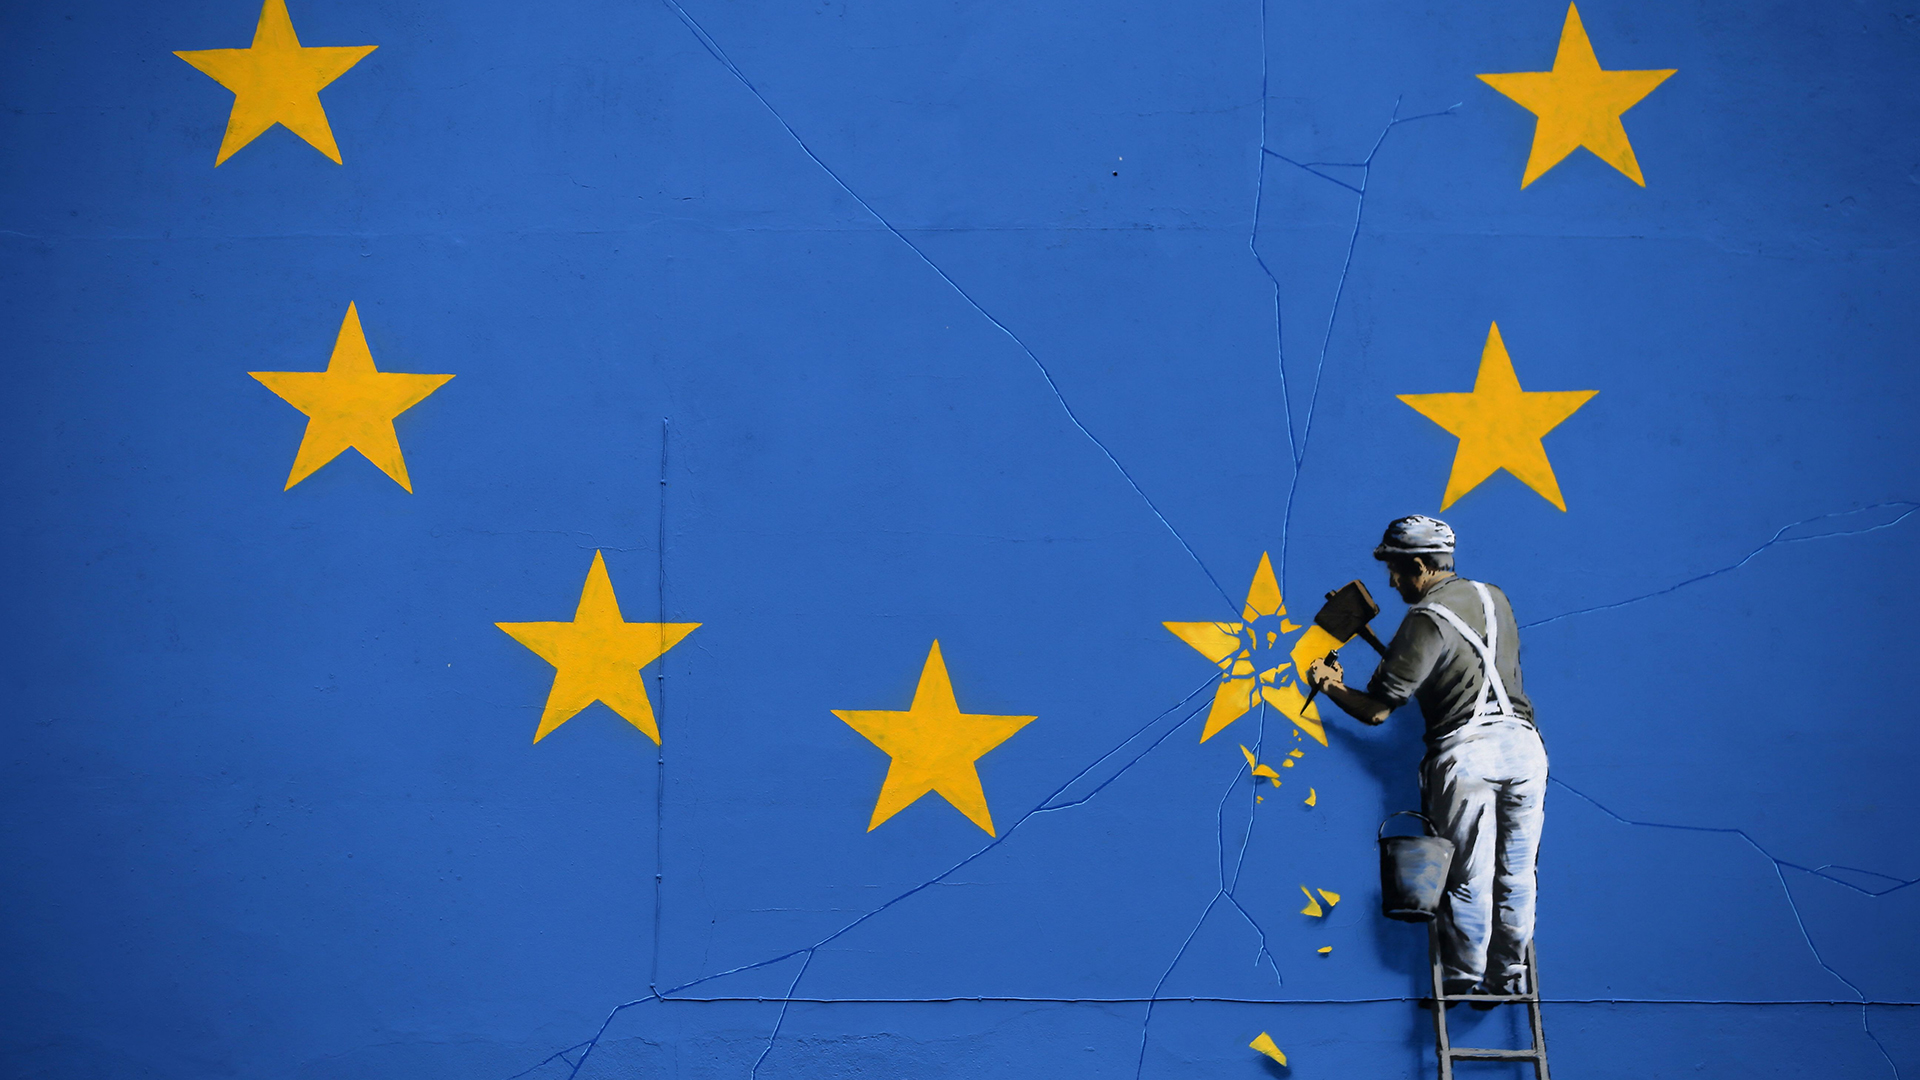 Streetart-Gemälde von Banksy zeigt einen Arbeiter, der mit einem Meißel einen Stern aus der EU-Flagge entfernt